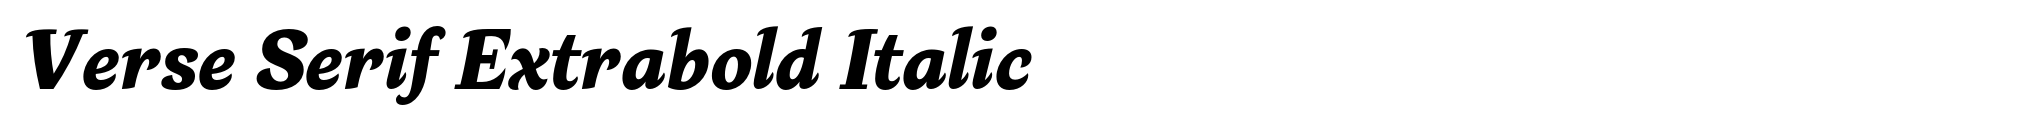 Verse Serif Extrabold Italic image